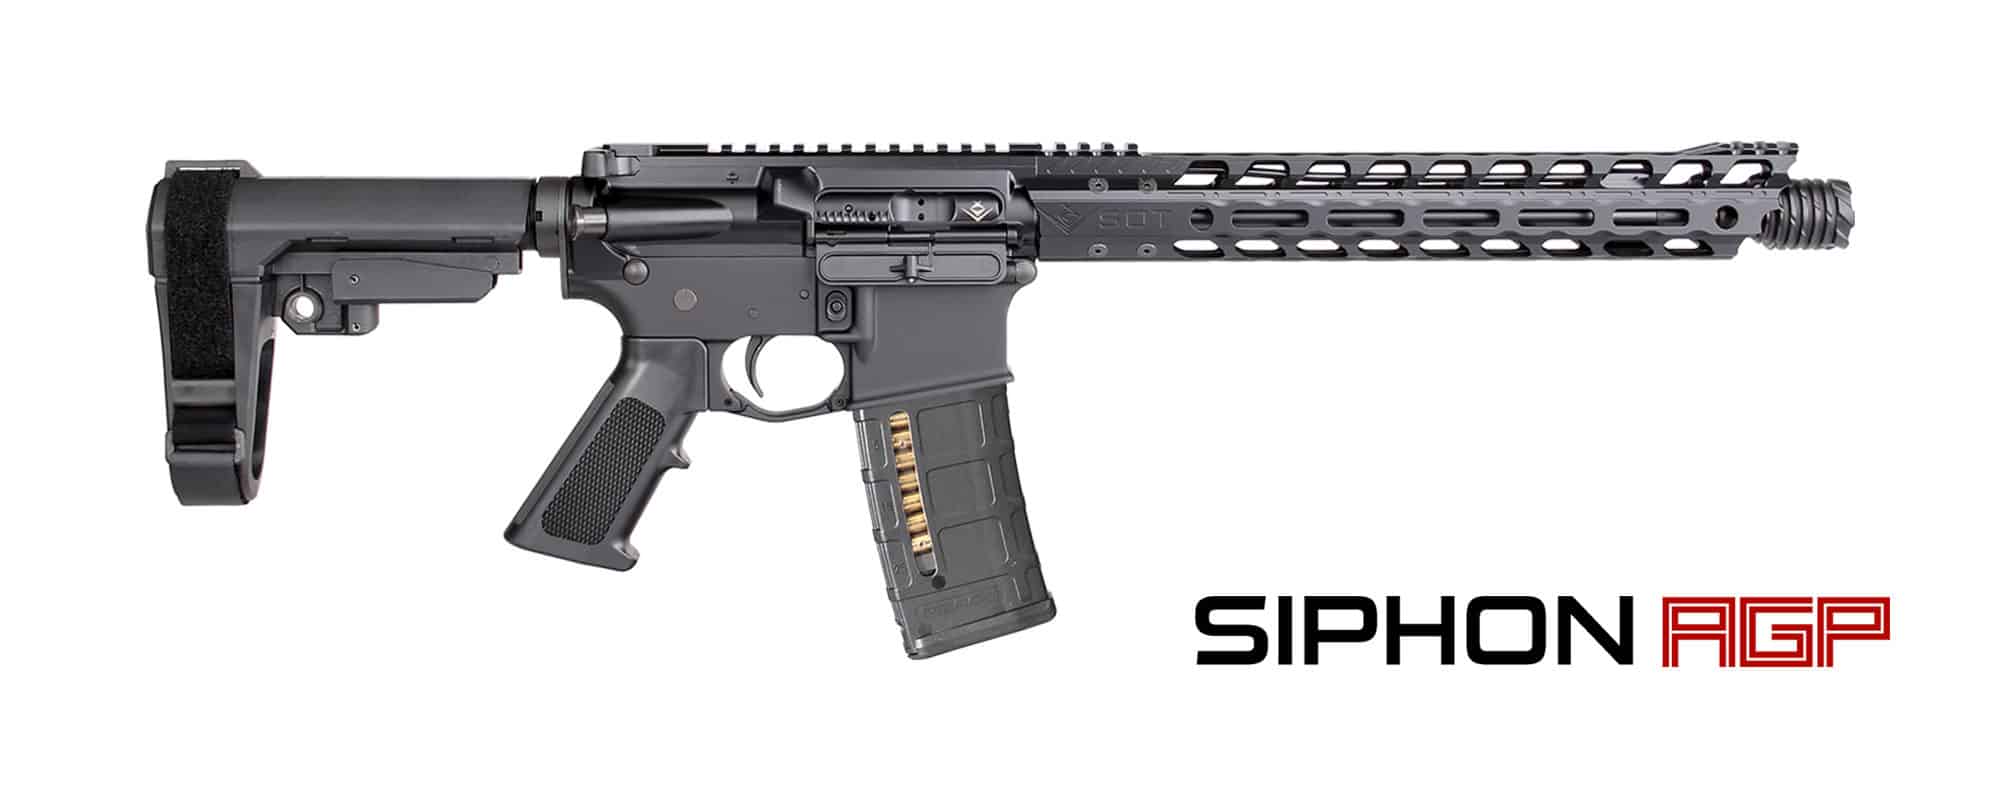 12" Siphon AGP Pistol w/ Firestorm-12" Rail